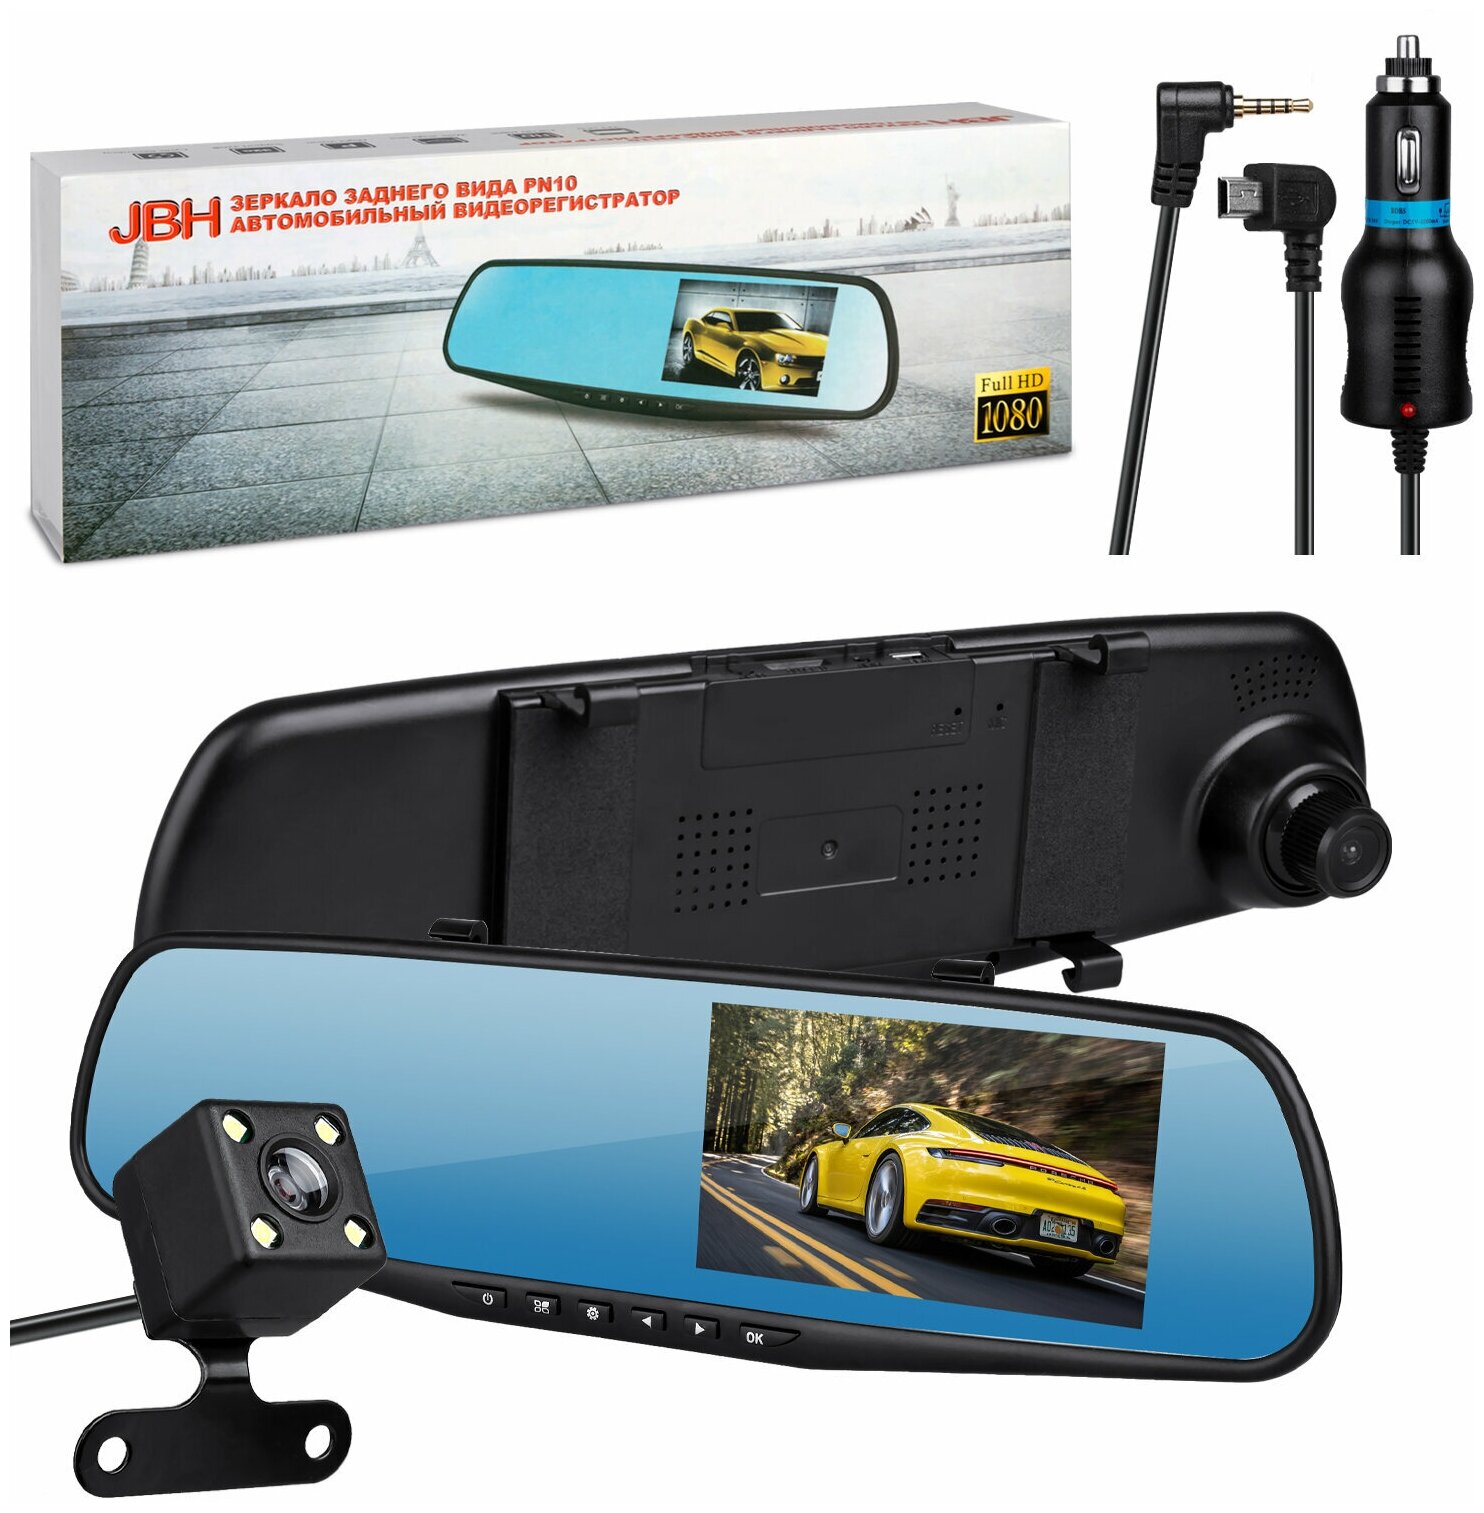 Видеорегистратор зеркало JBH PN10 с двумя камерами Full HD 1080 (1920x1080) / увеличенный LCD монитор 4.5" / ночная съемка / помощь при парковке